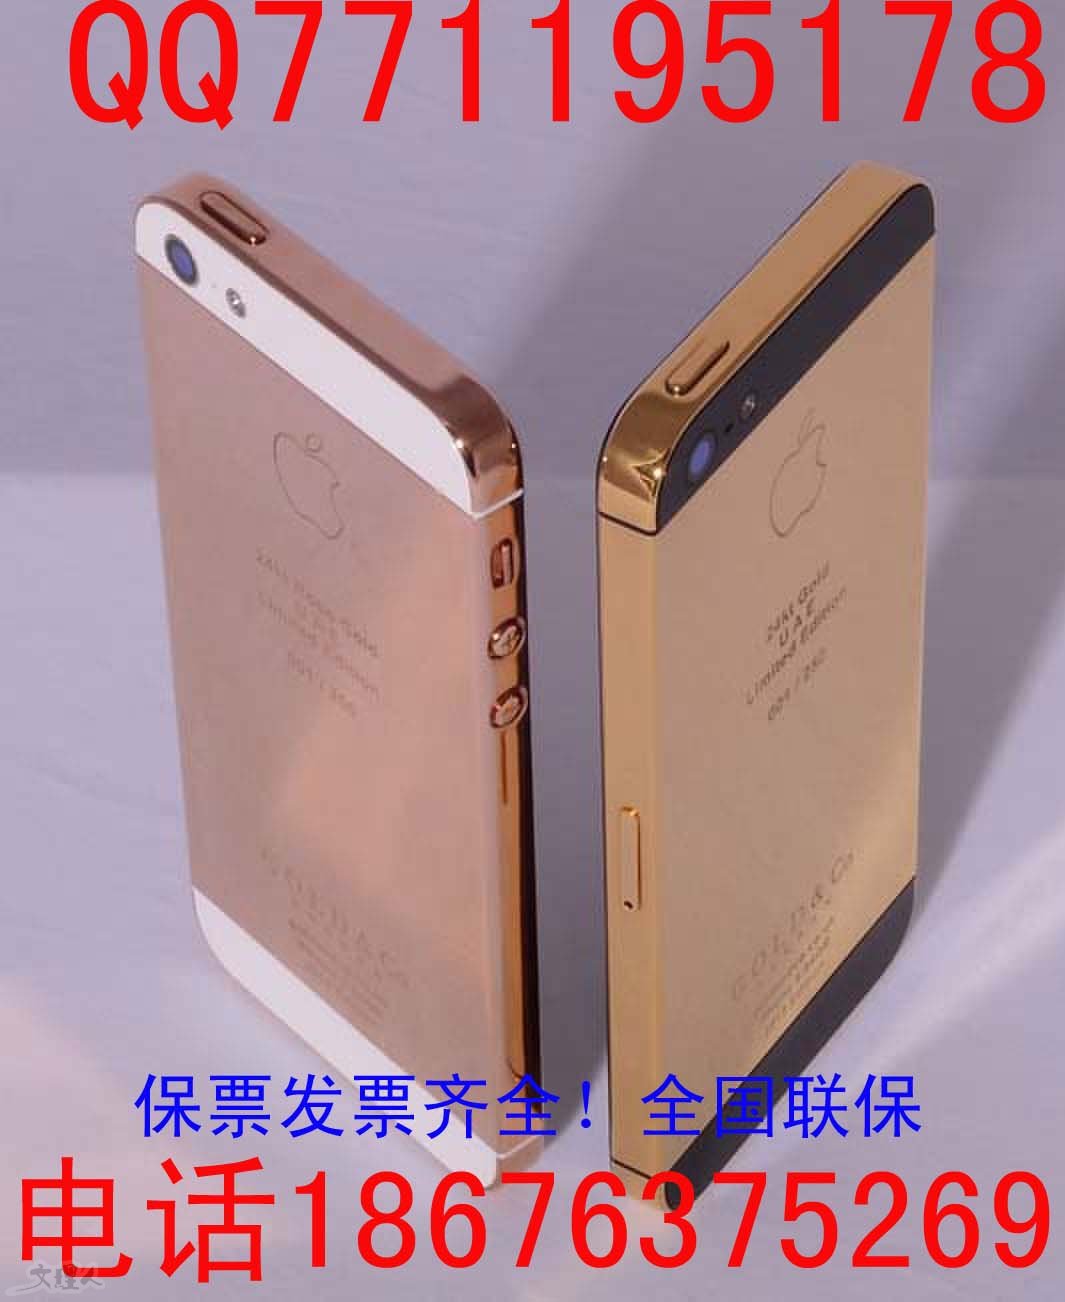 iphone5S 16G土豪金.jpg